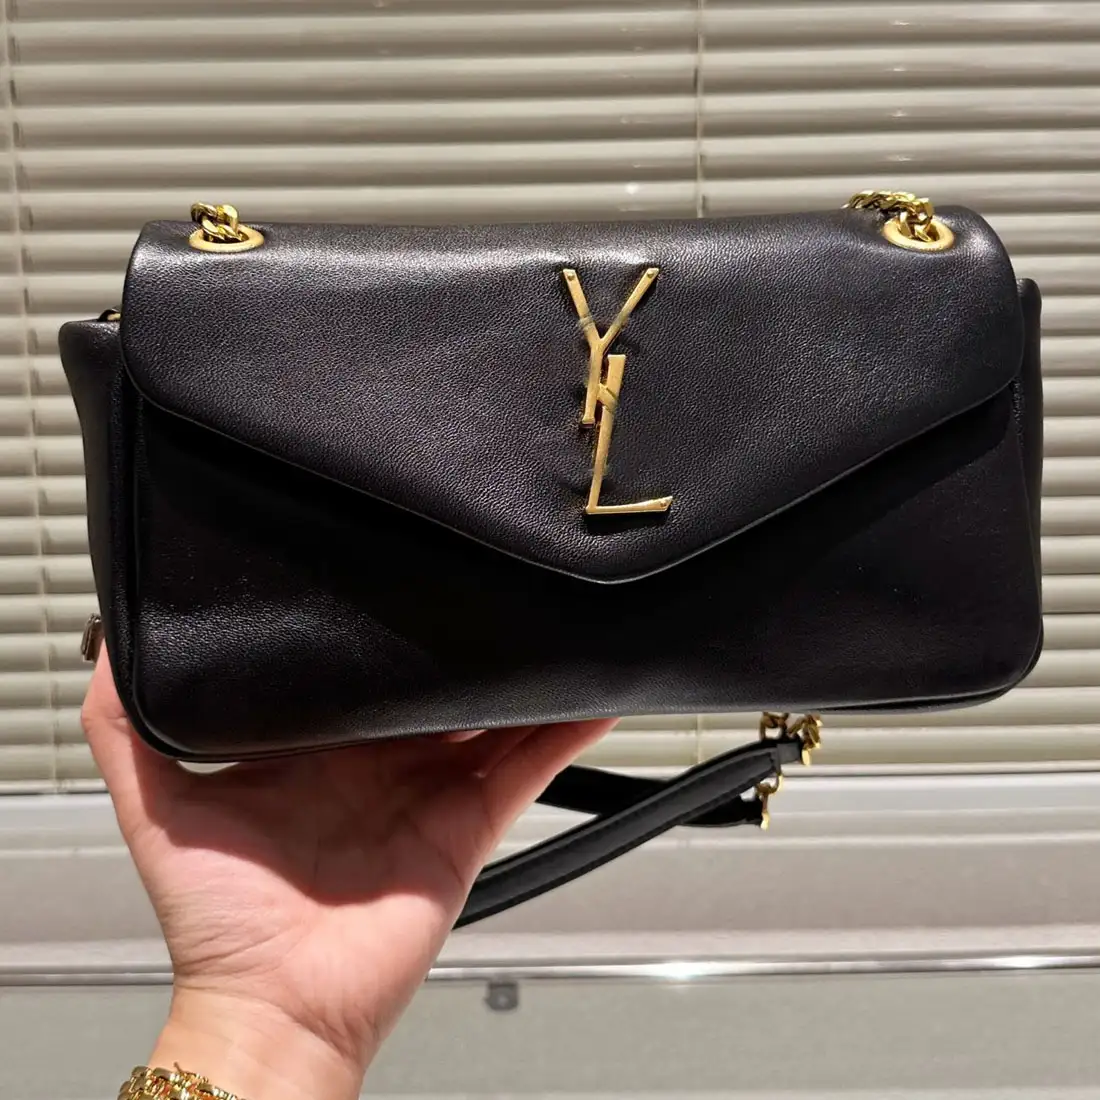 Saint Laurent genuine leather handbag